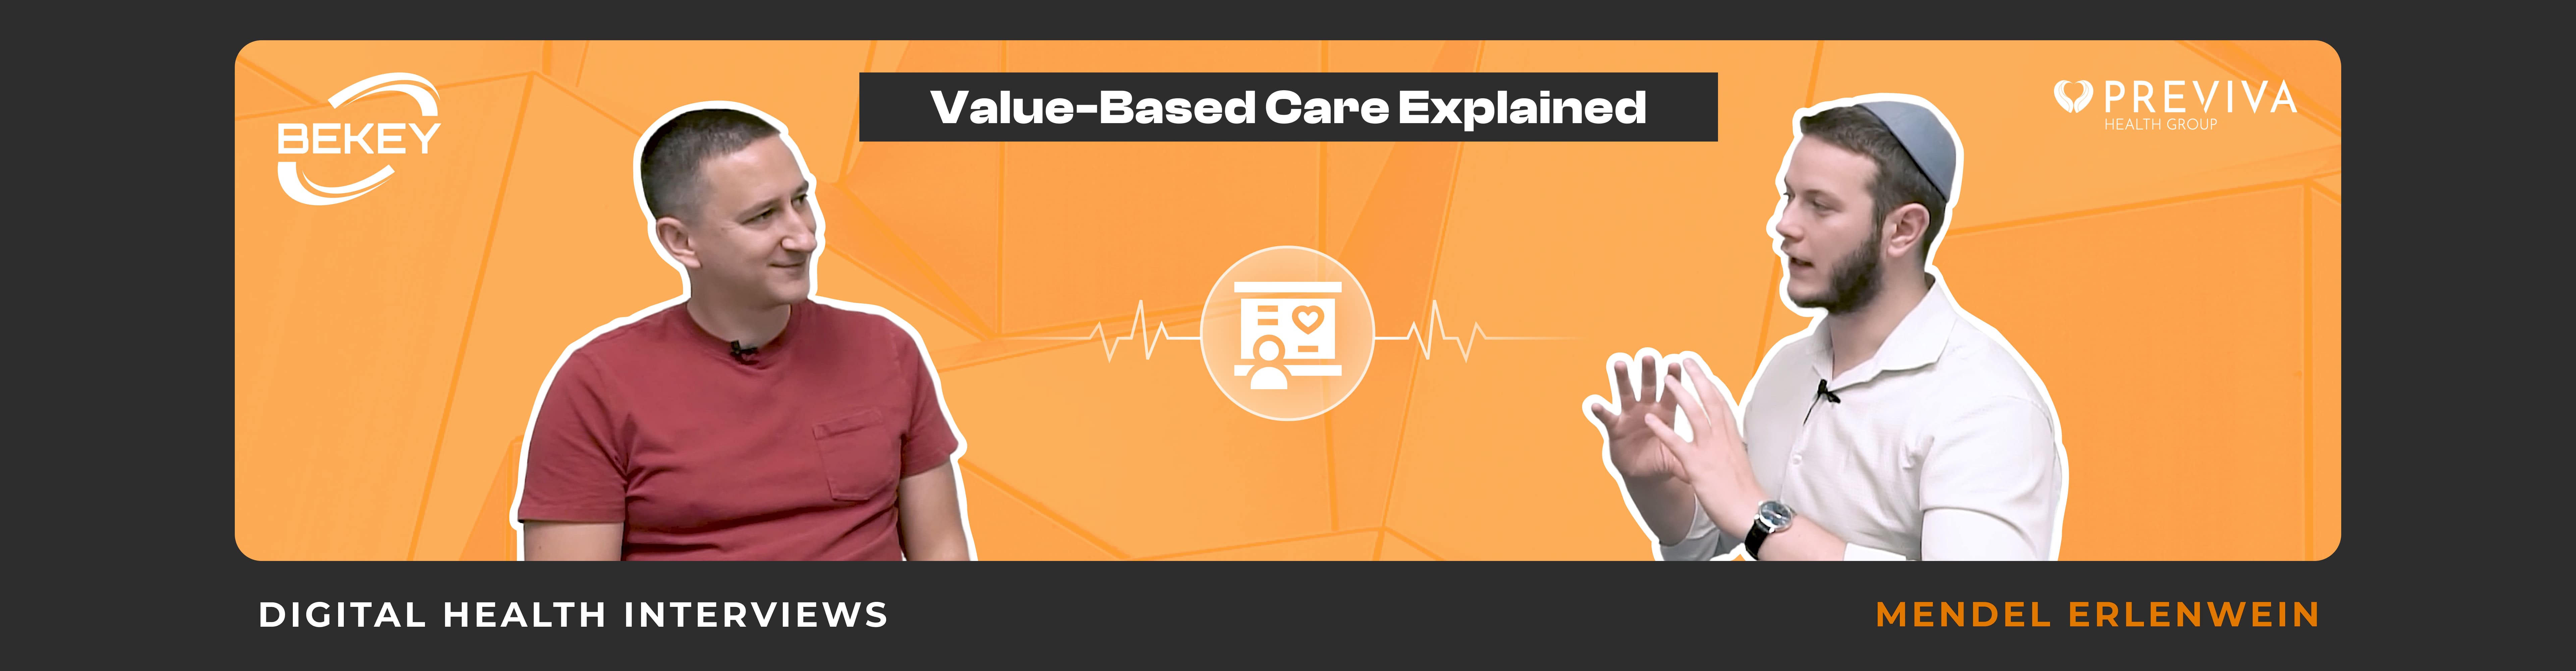 Value-Based Care Explained. Digital Health Interviews: Mendel Erlenwein - image